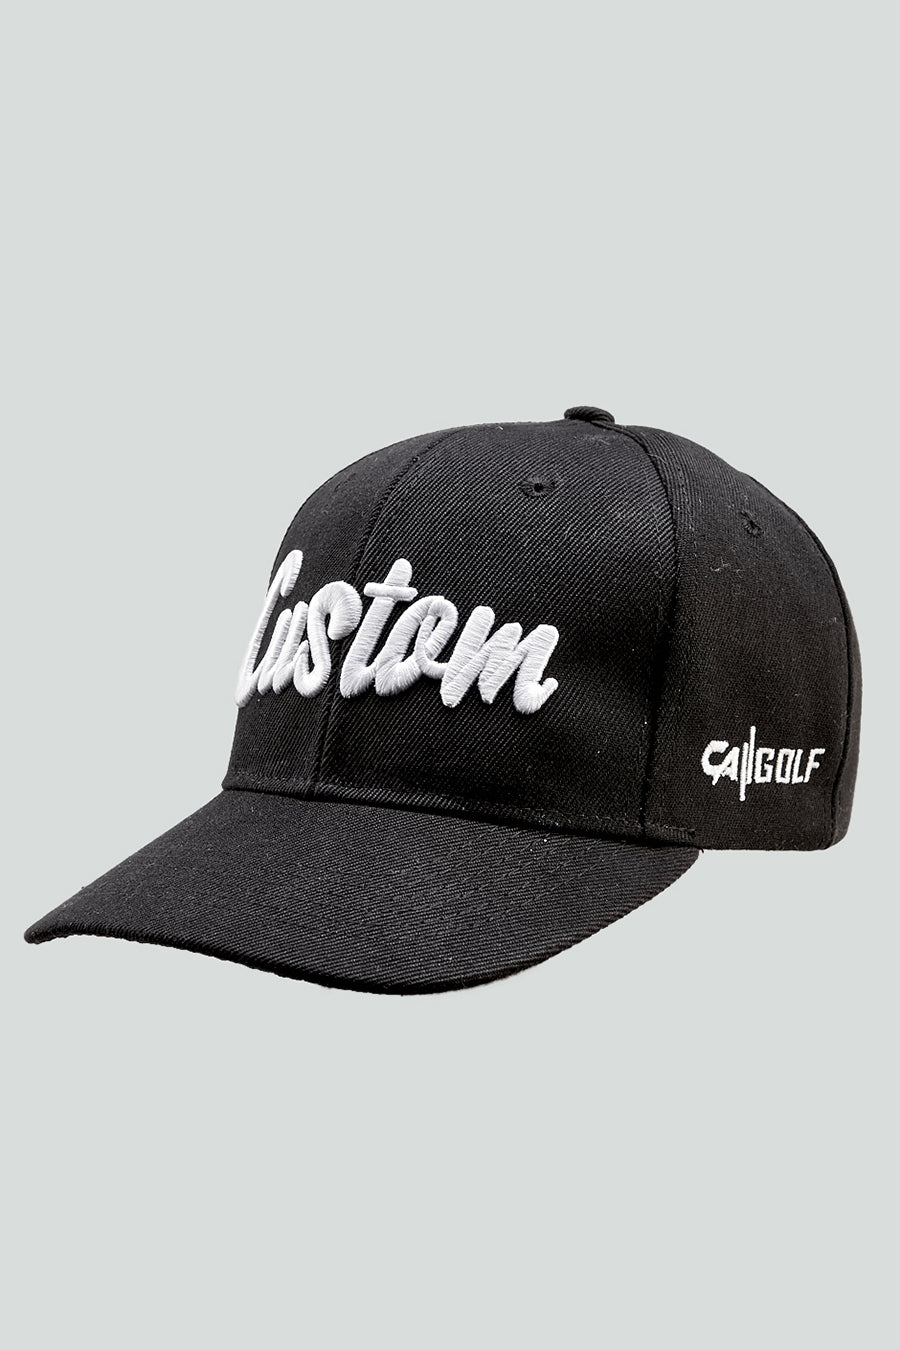 Custom Golf Snap Back Cap | Black / White